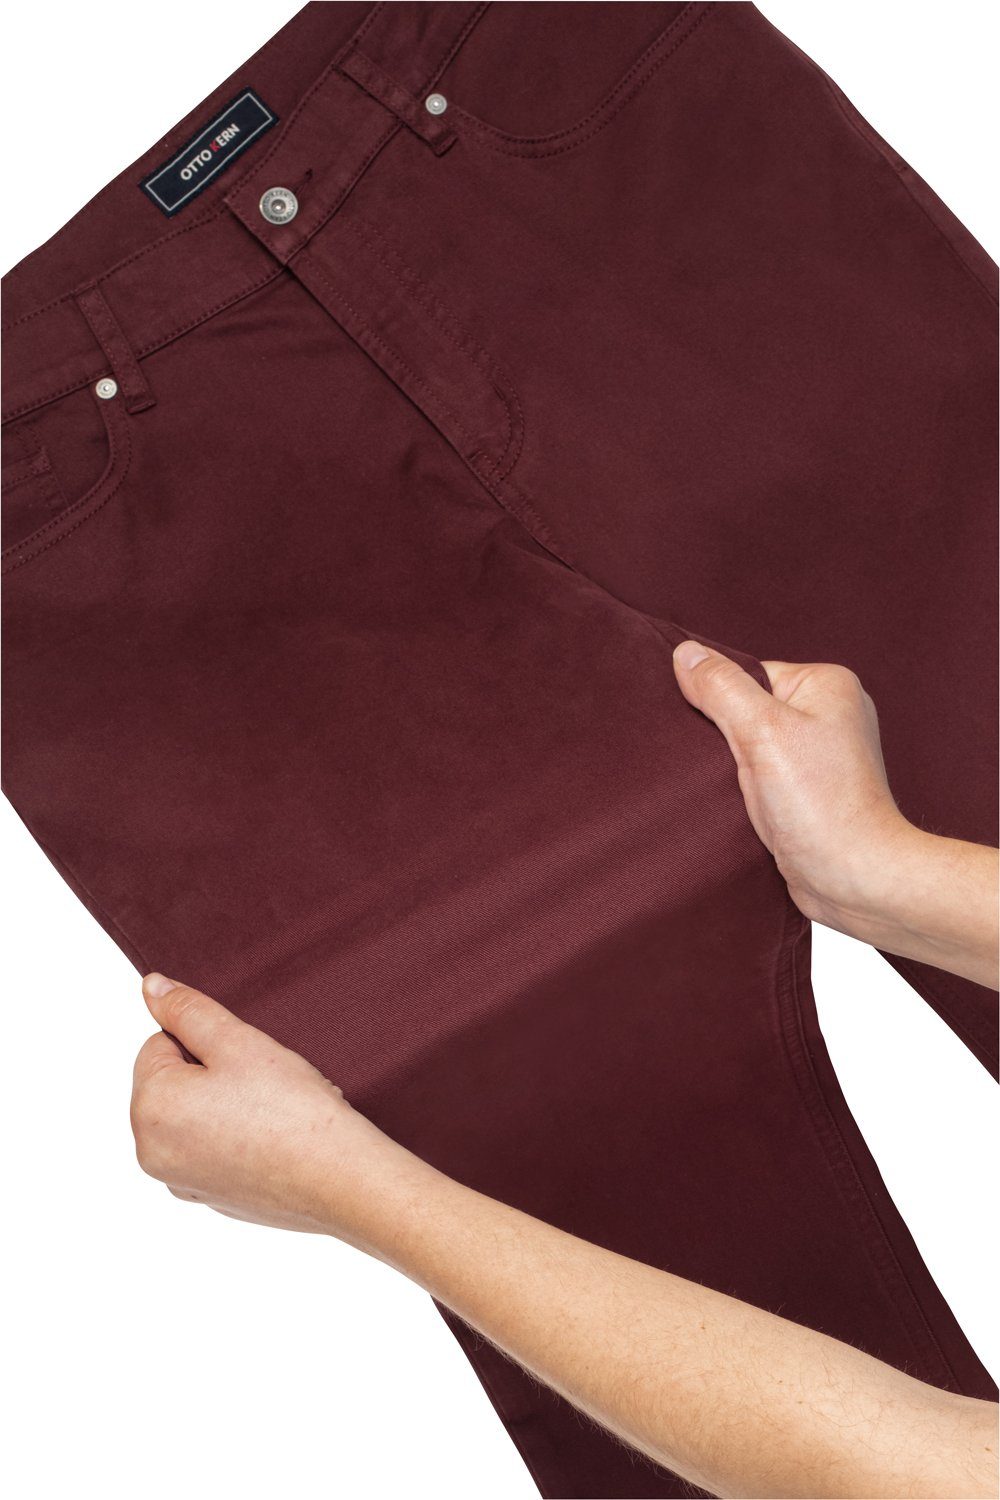 Kern 5-Pocket-Style, Otto hervorragender Stretch-Jeans Farbintensität Kern im bordeaux mit